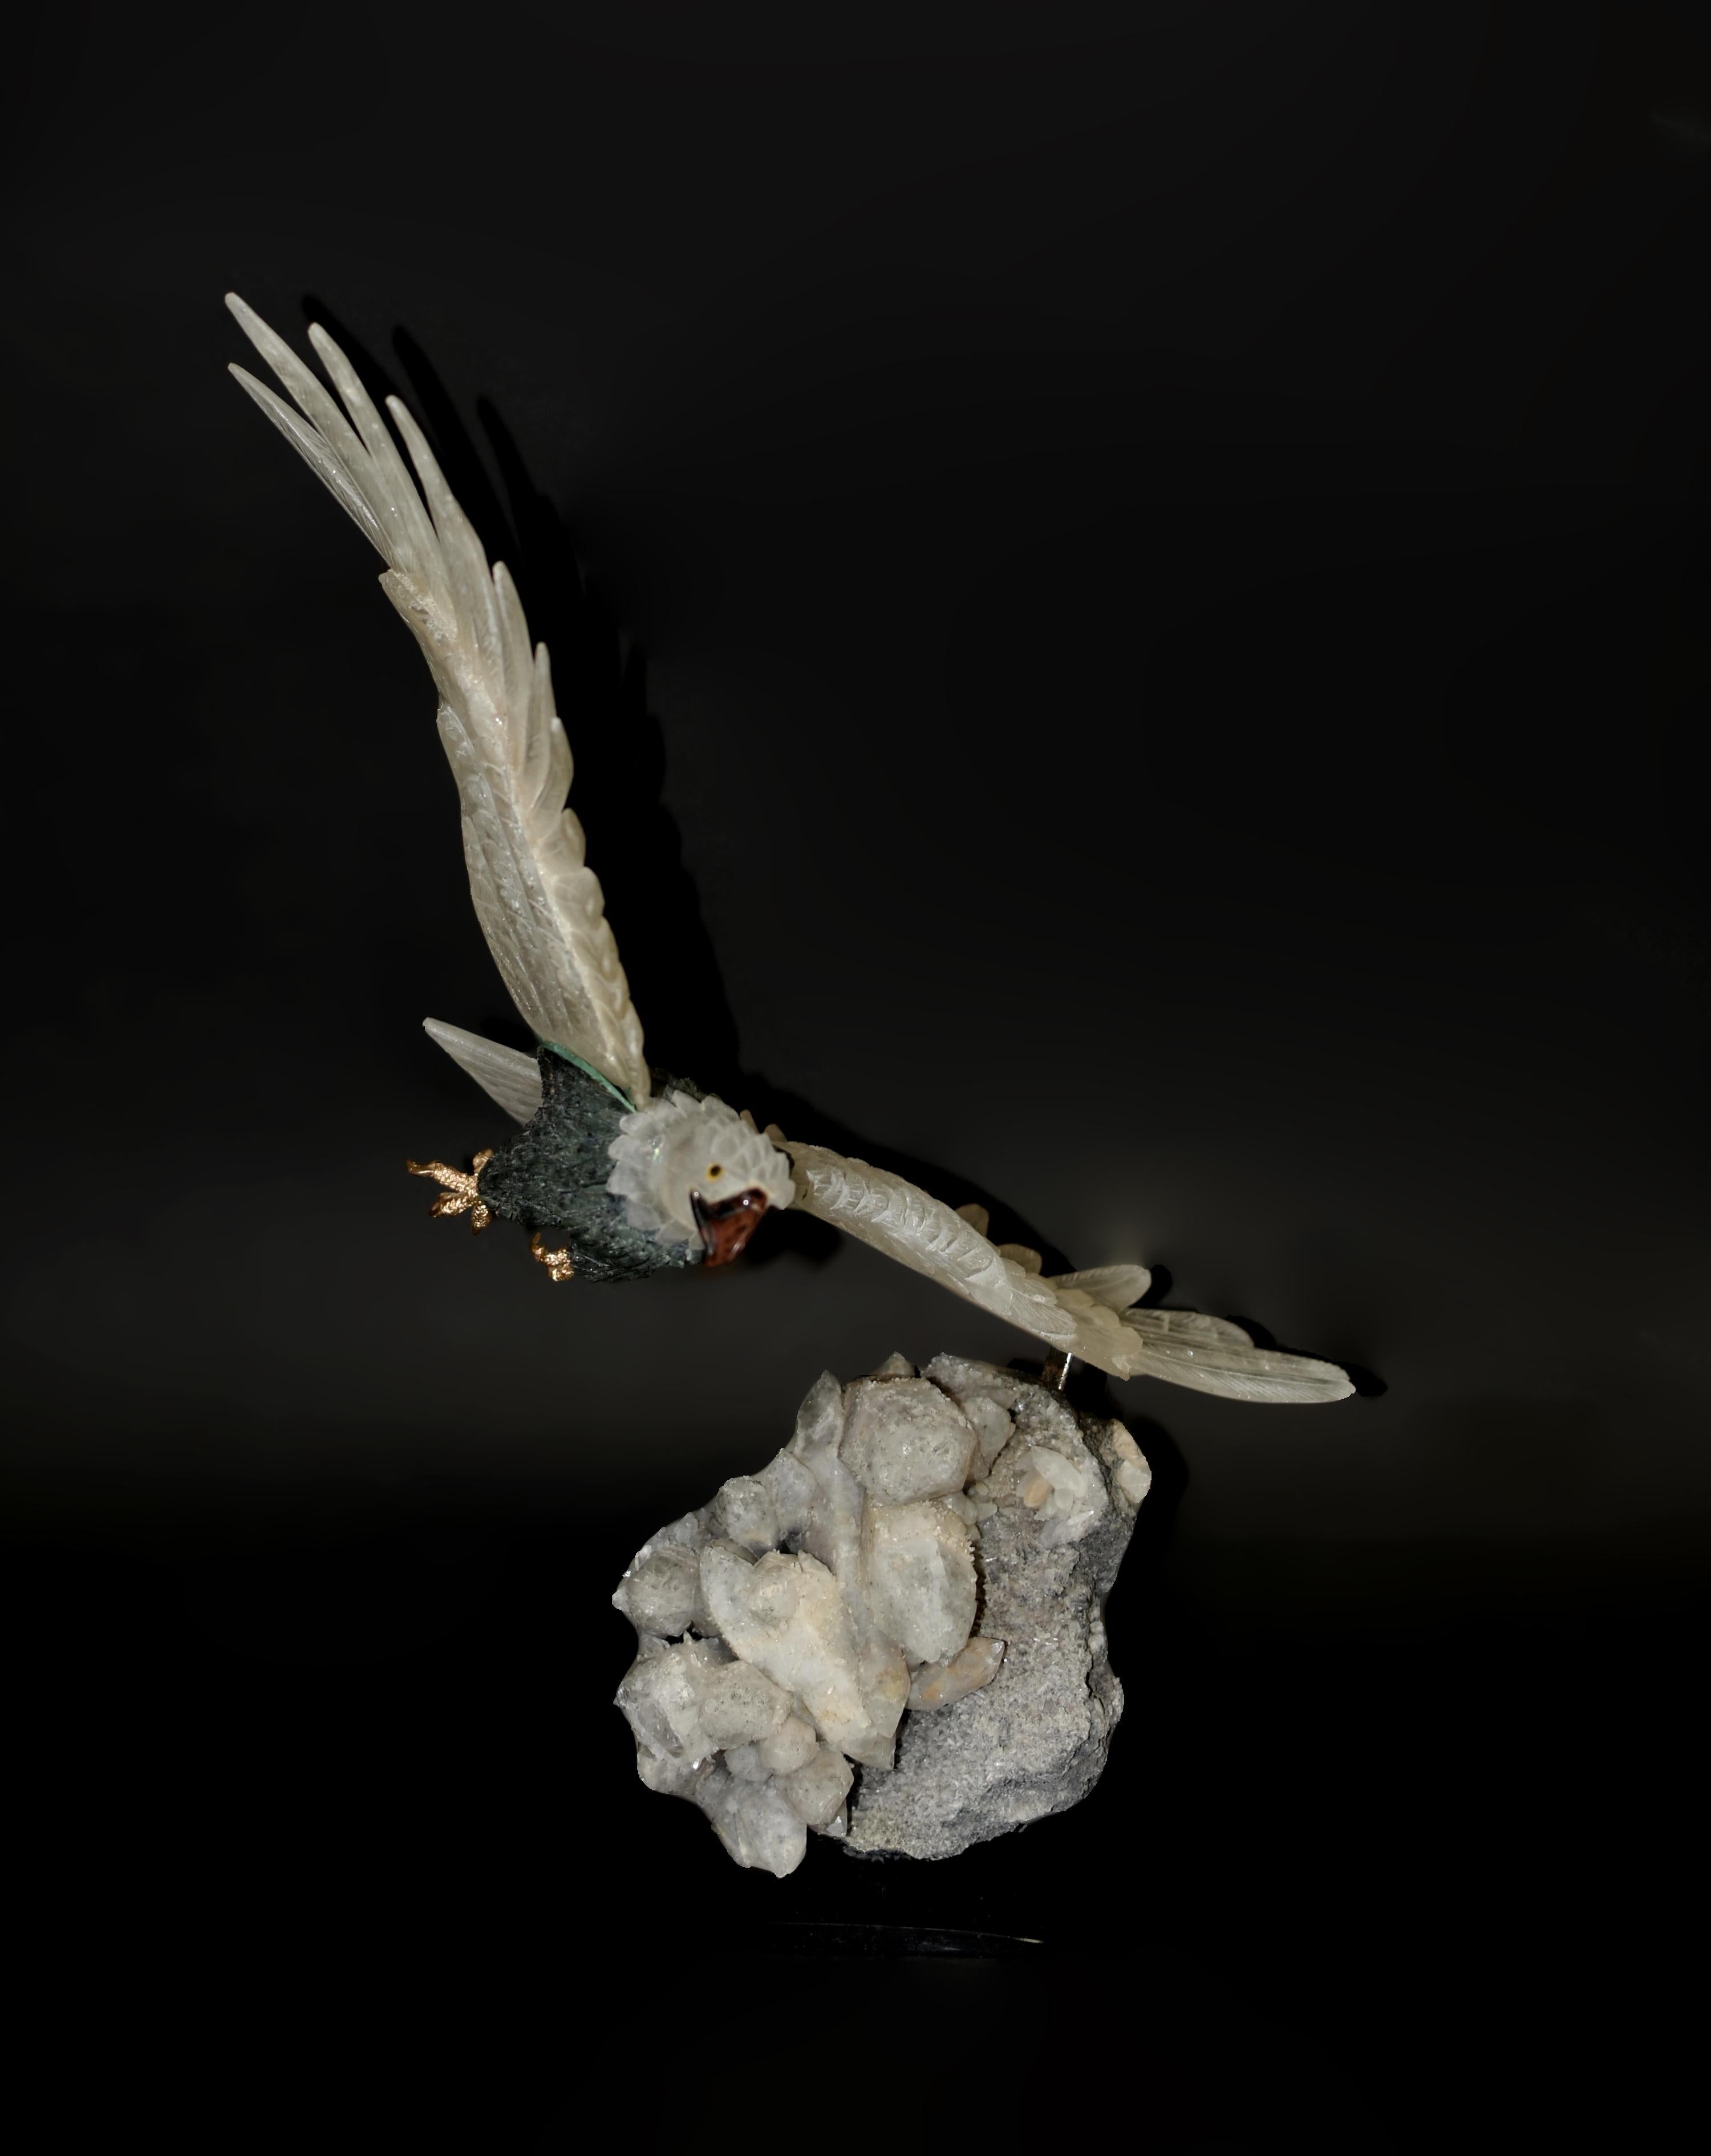 Der einzigartige, majestätische Bergkristall-Adler wurde mit größter Kunstfertigkeit und exquisiter Präzision gefertigt und erregt mit seiner beeindruckenden Präsenz Aufmerksamkeit. Mit einer Flügelspannweite von beeindruckenden 19 Zentimetern,